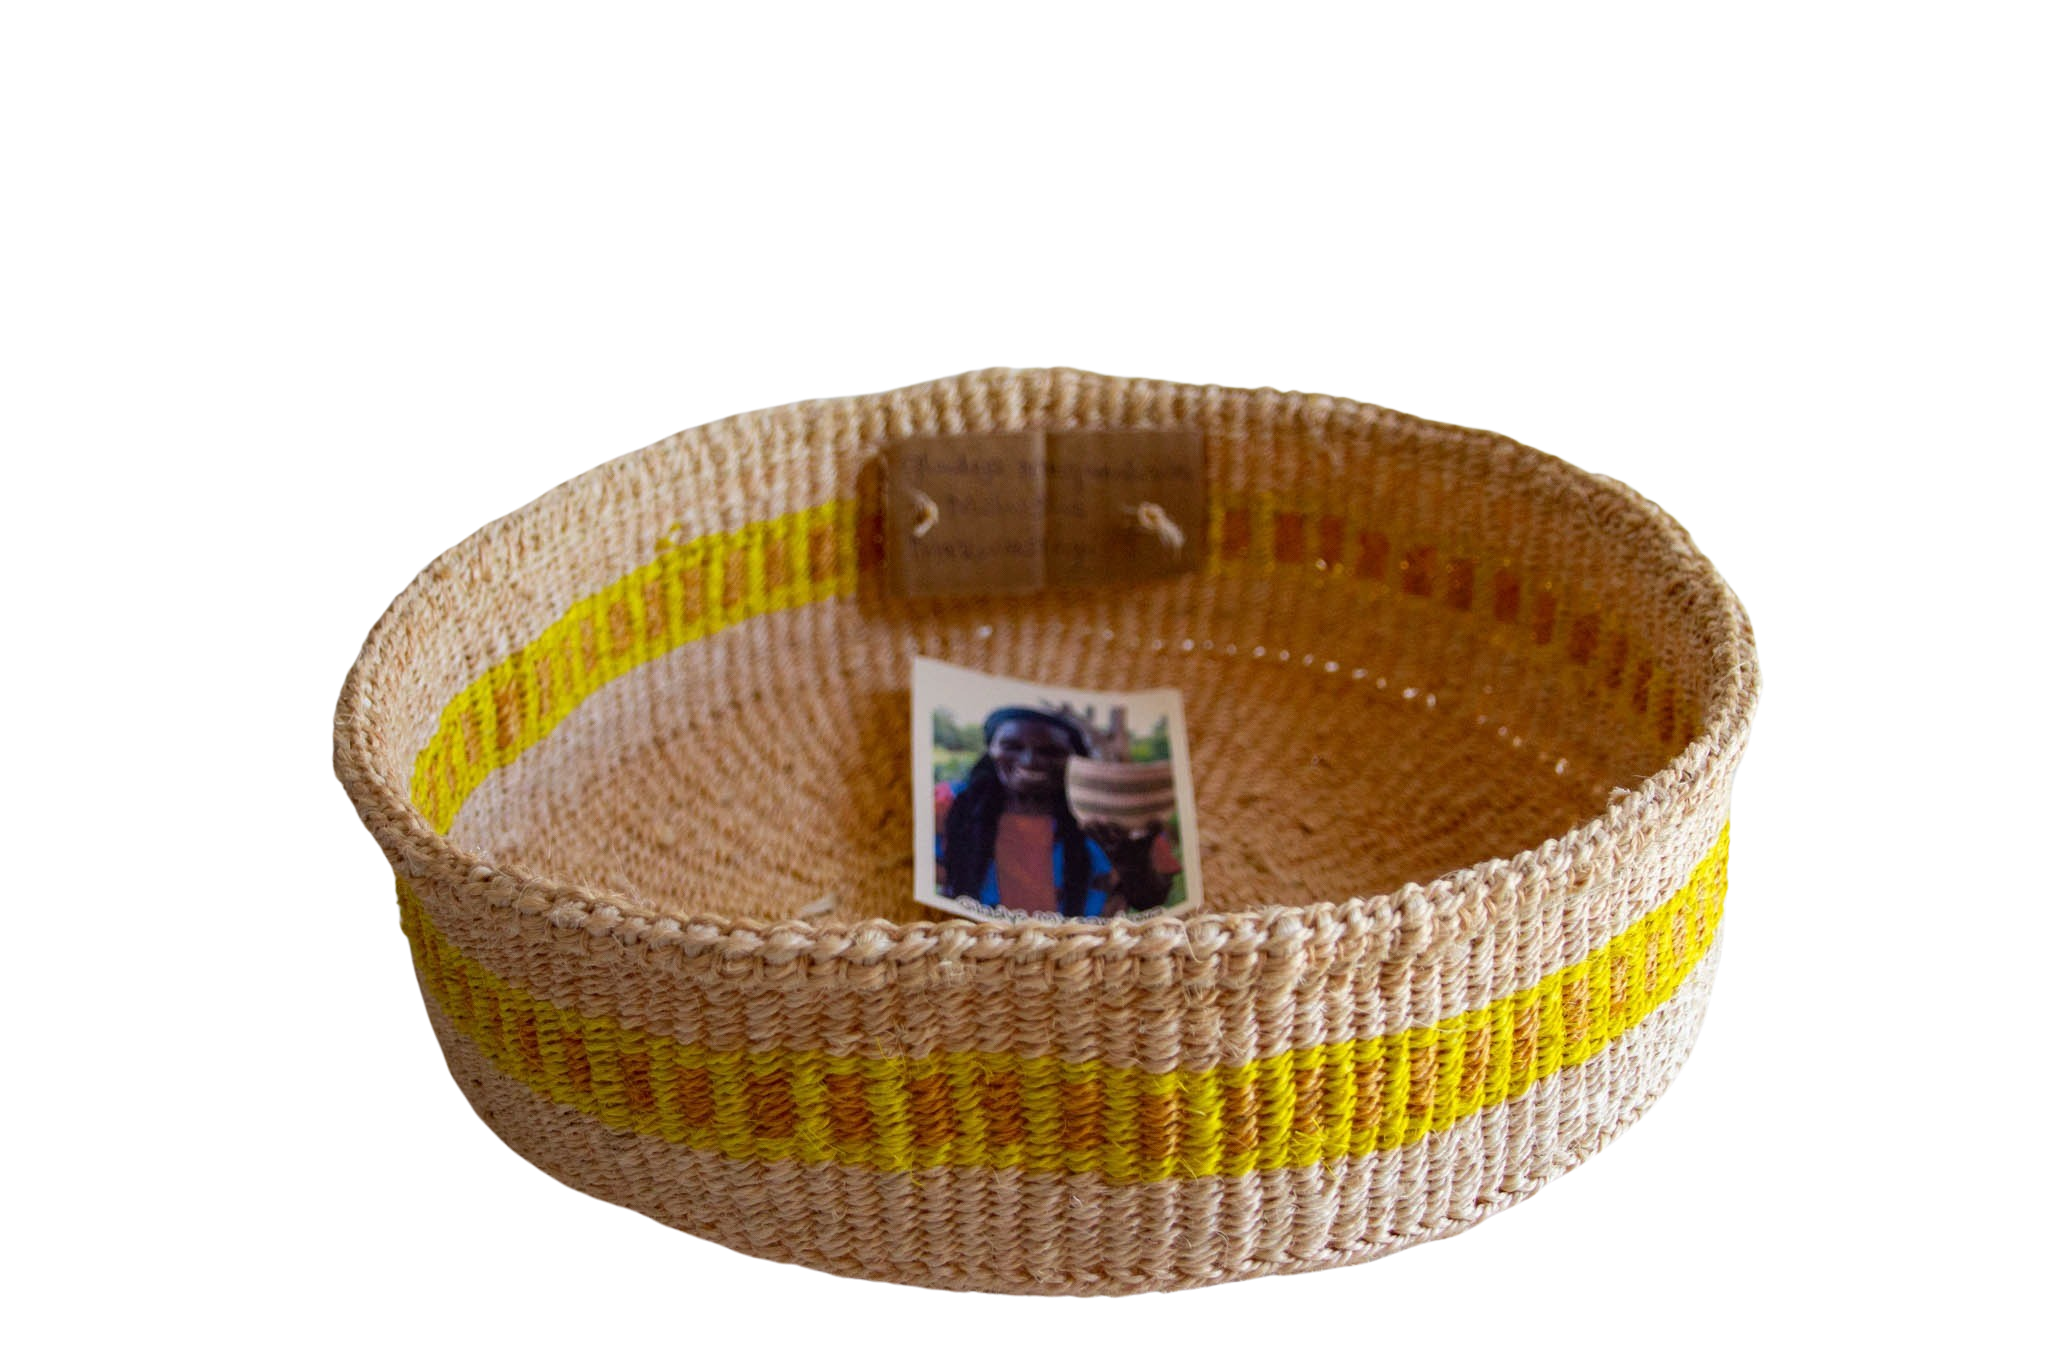 Yellow Hadithi Fruit basket of sisal